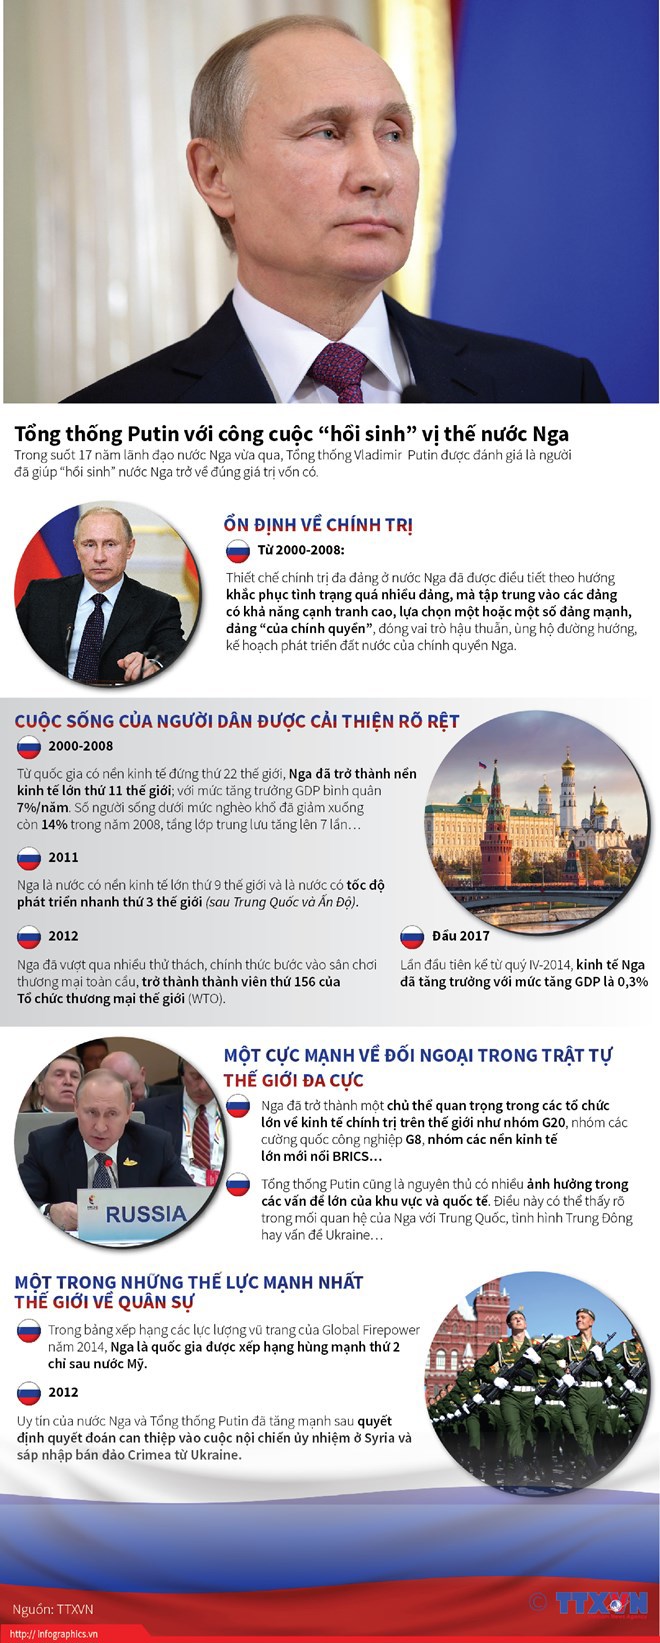 [Infographics] Tổng thống Putin với công cuộc “hồi sinh” vị thế nước Nga - Ảnh 1